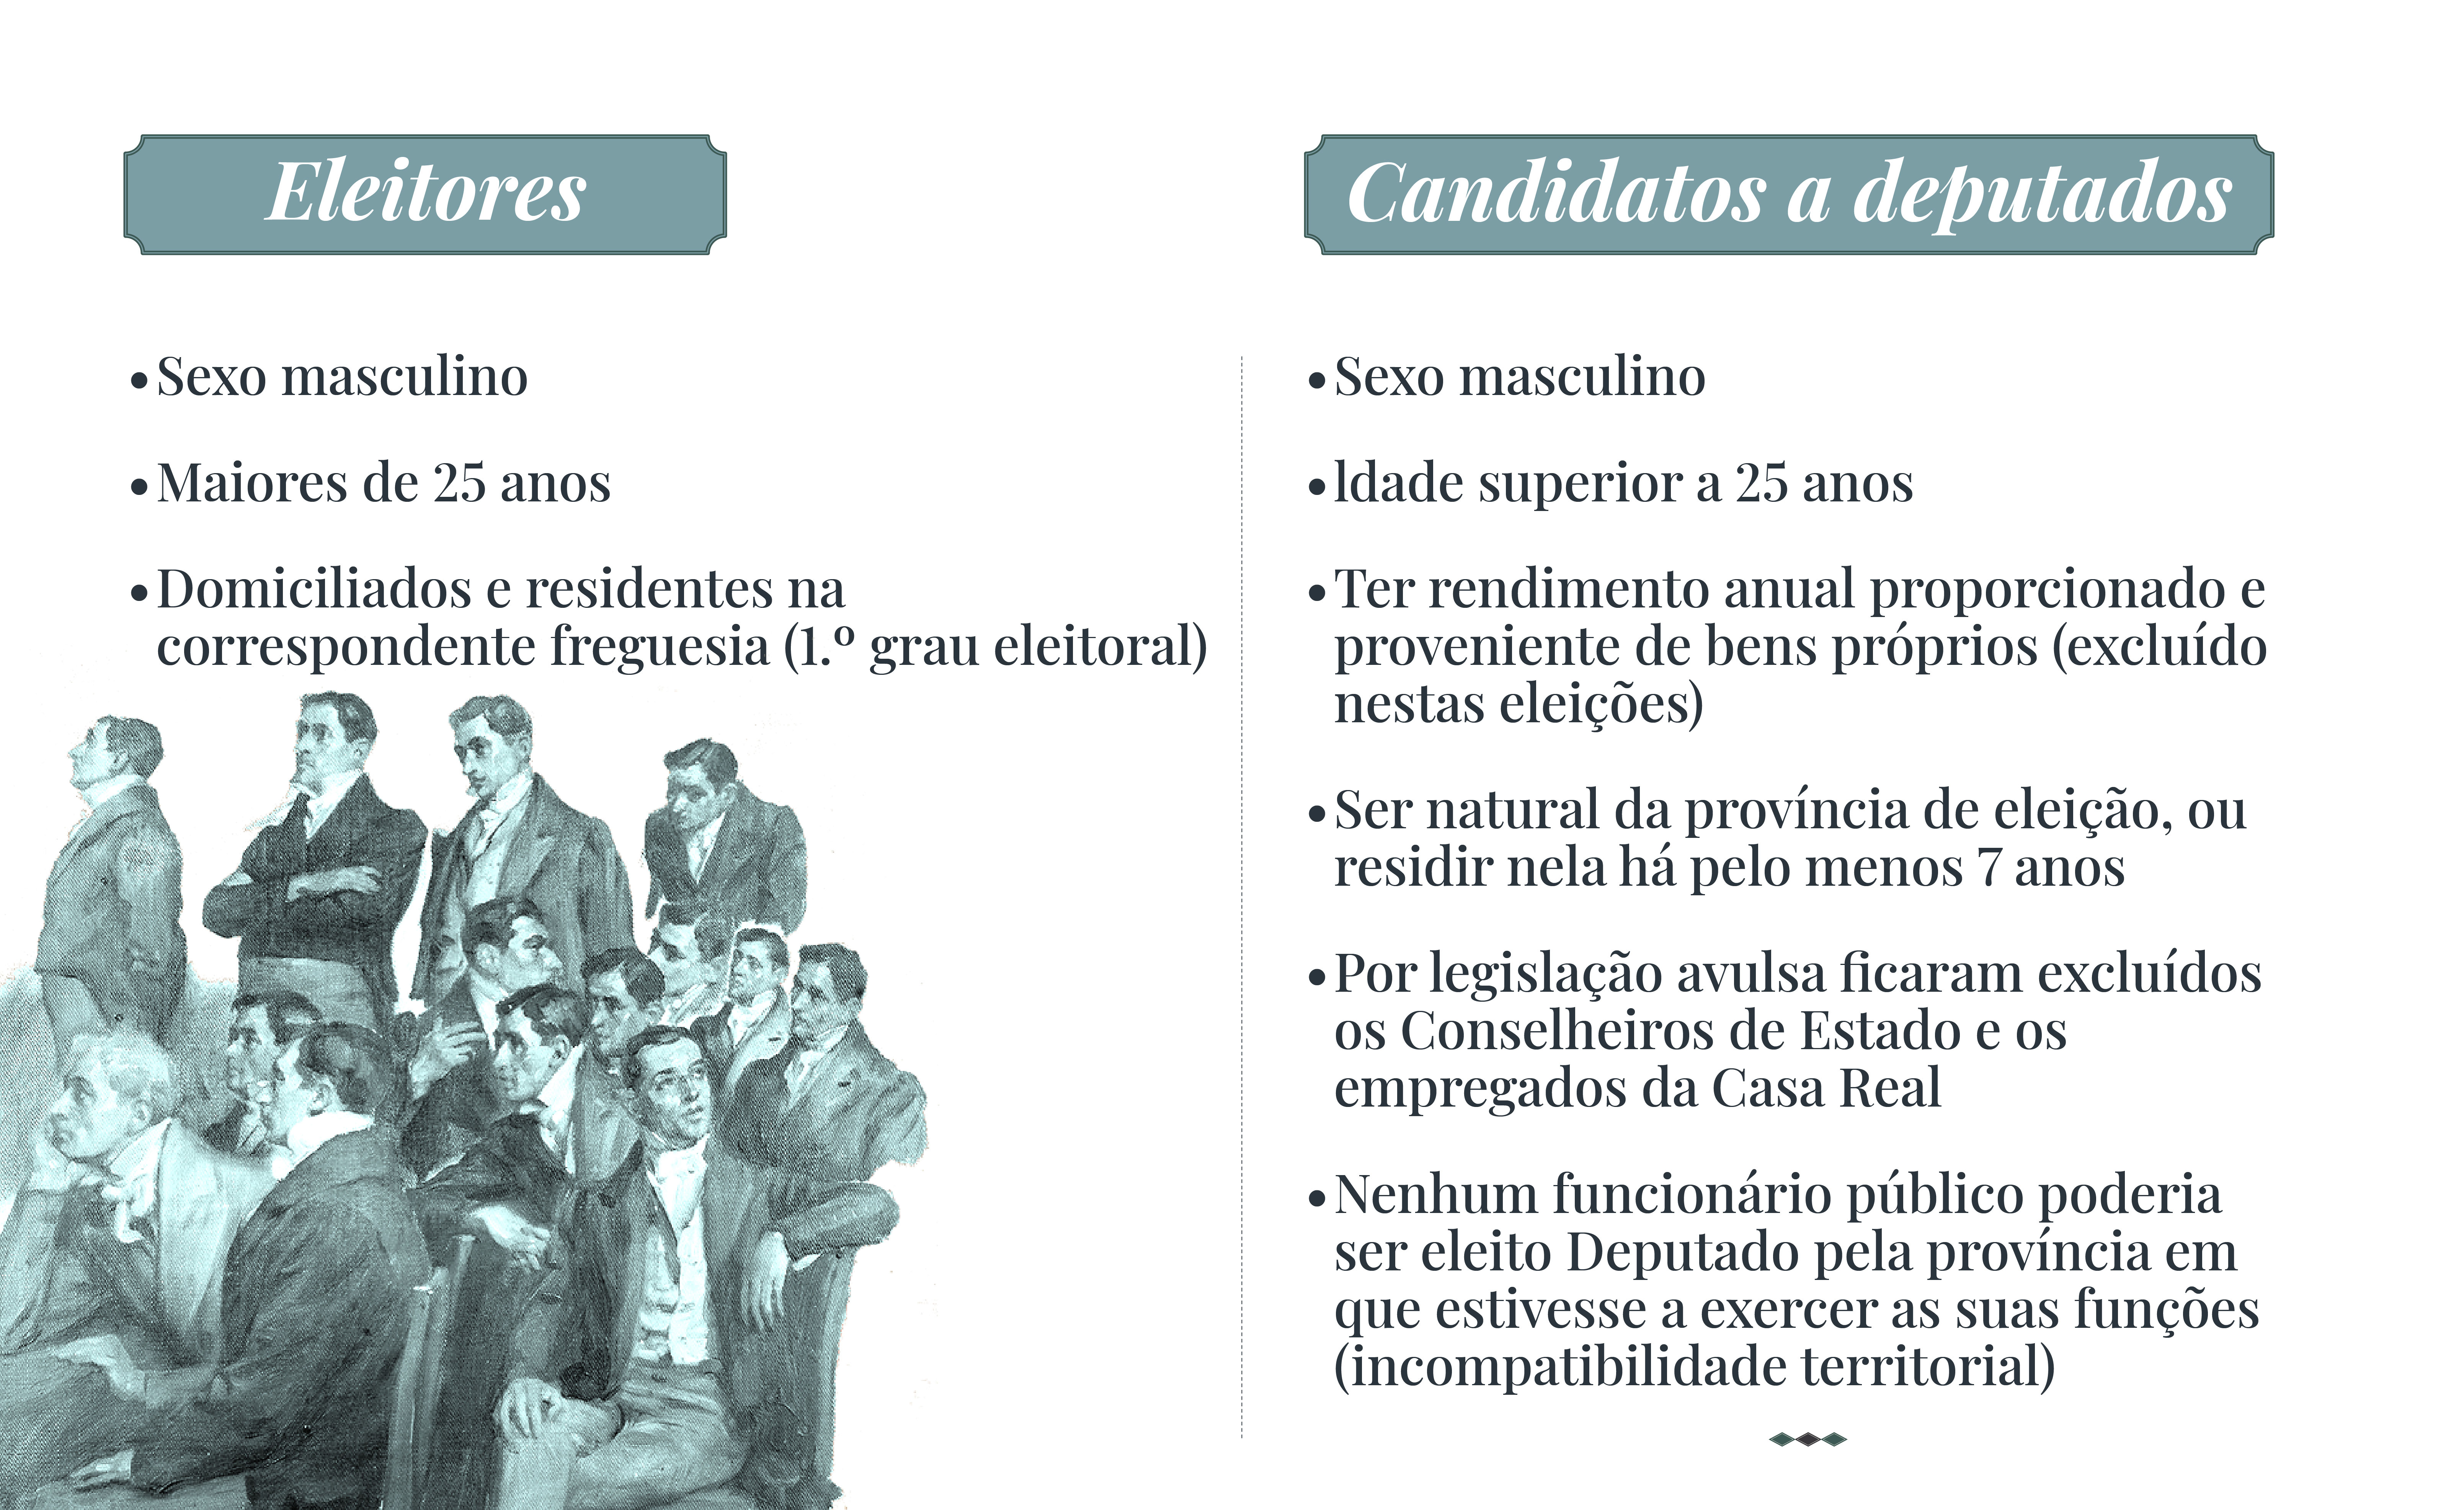 Eleitores / Candidatos a Deputados